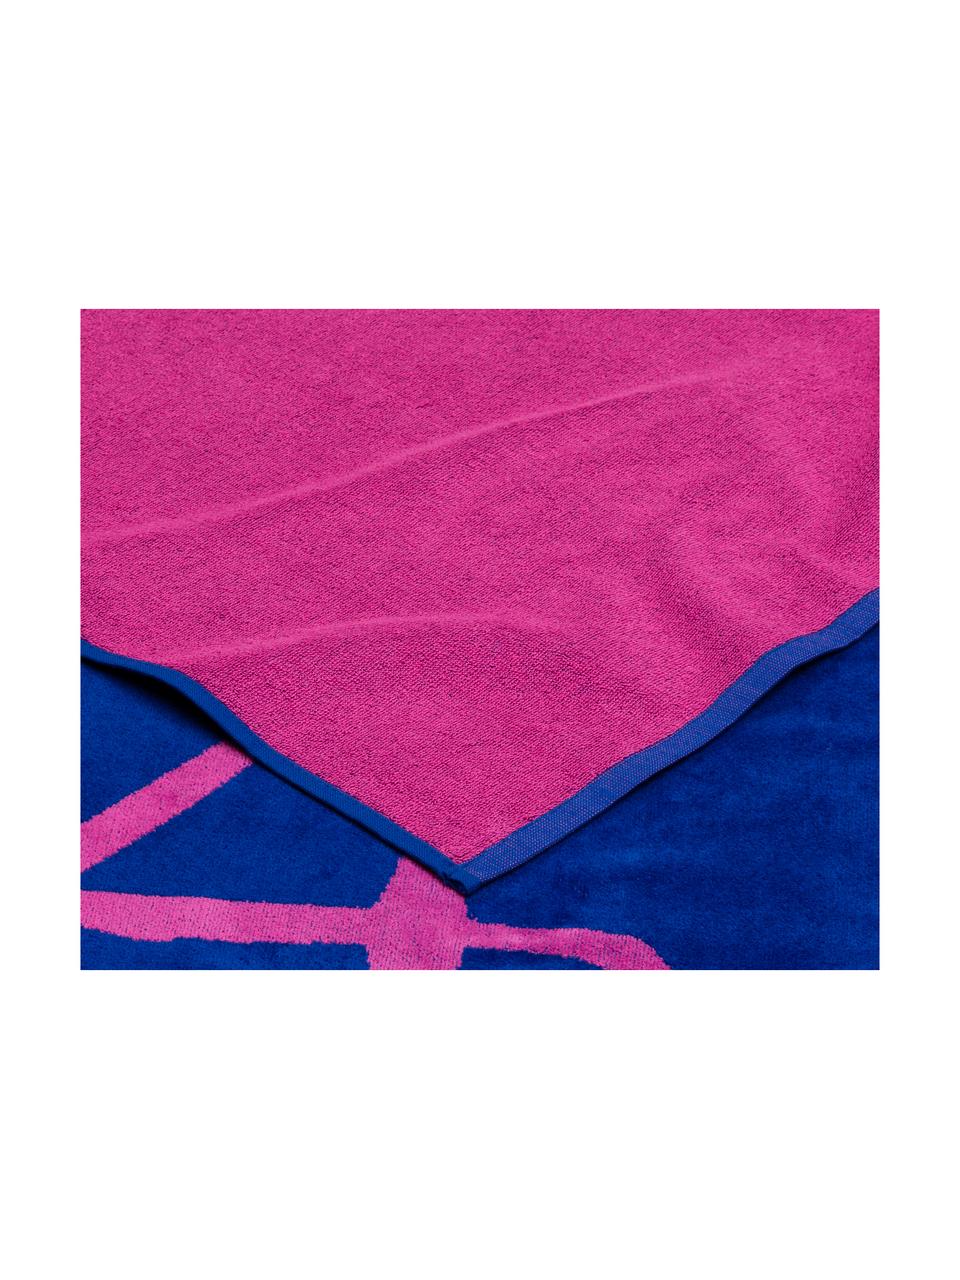 Serviette de plage Flamingo, Bleu cobalt, rose vif